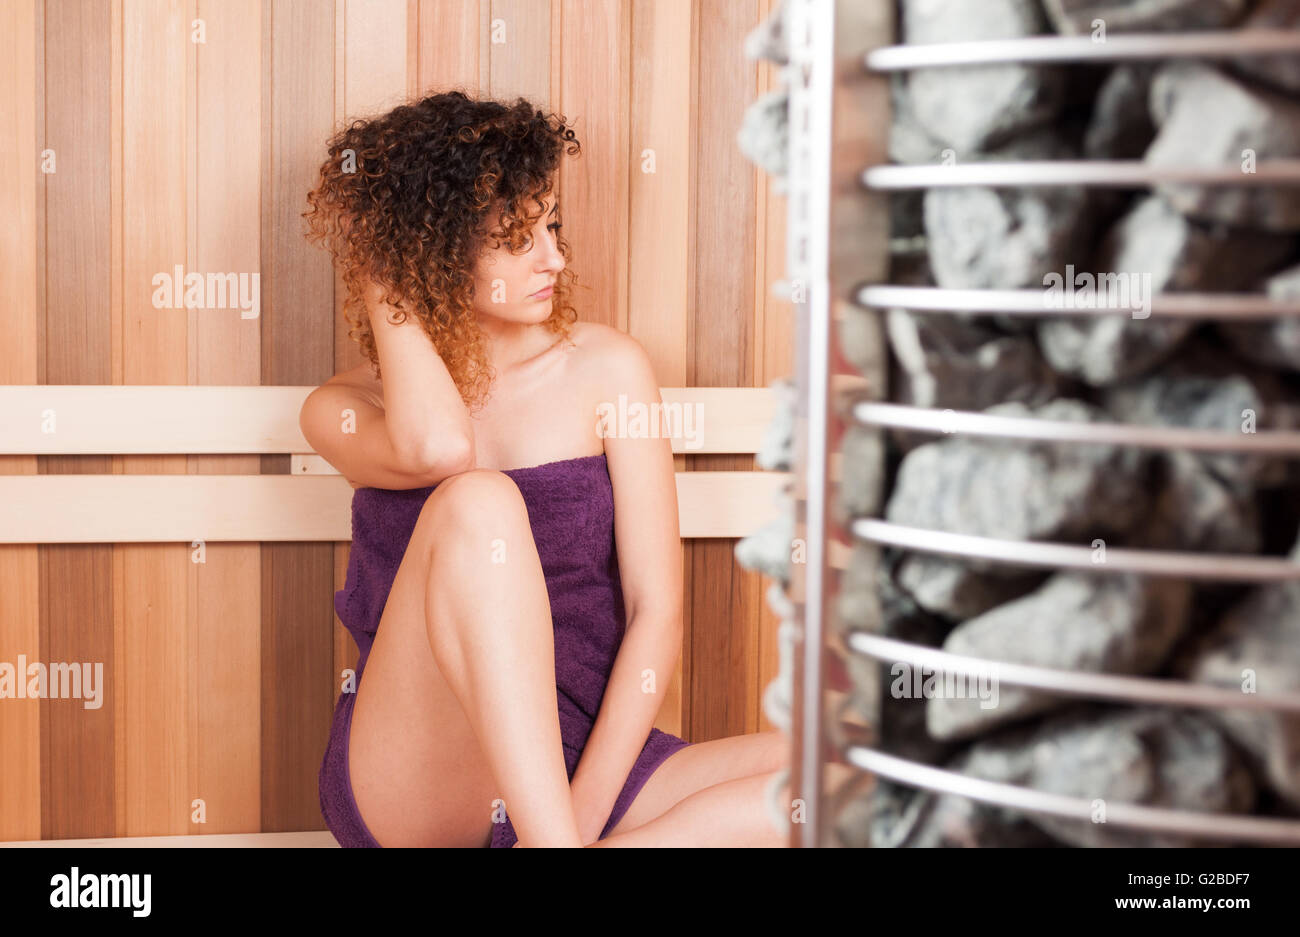 Bella donna seduta su un banco di lavoro accanto al forno sauna rilassante e appoggiata Foto Stock